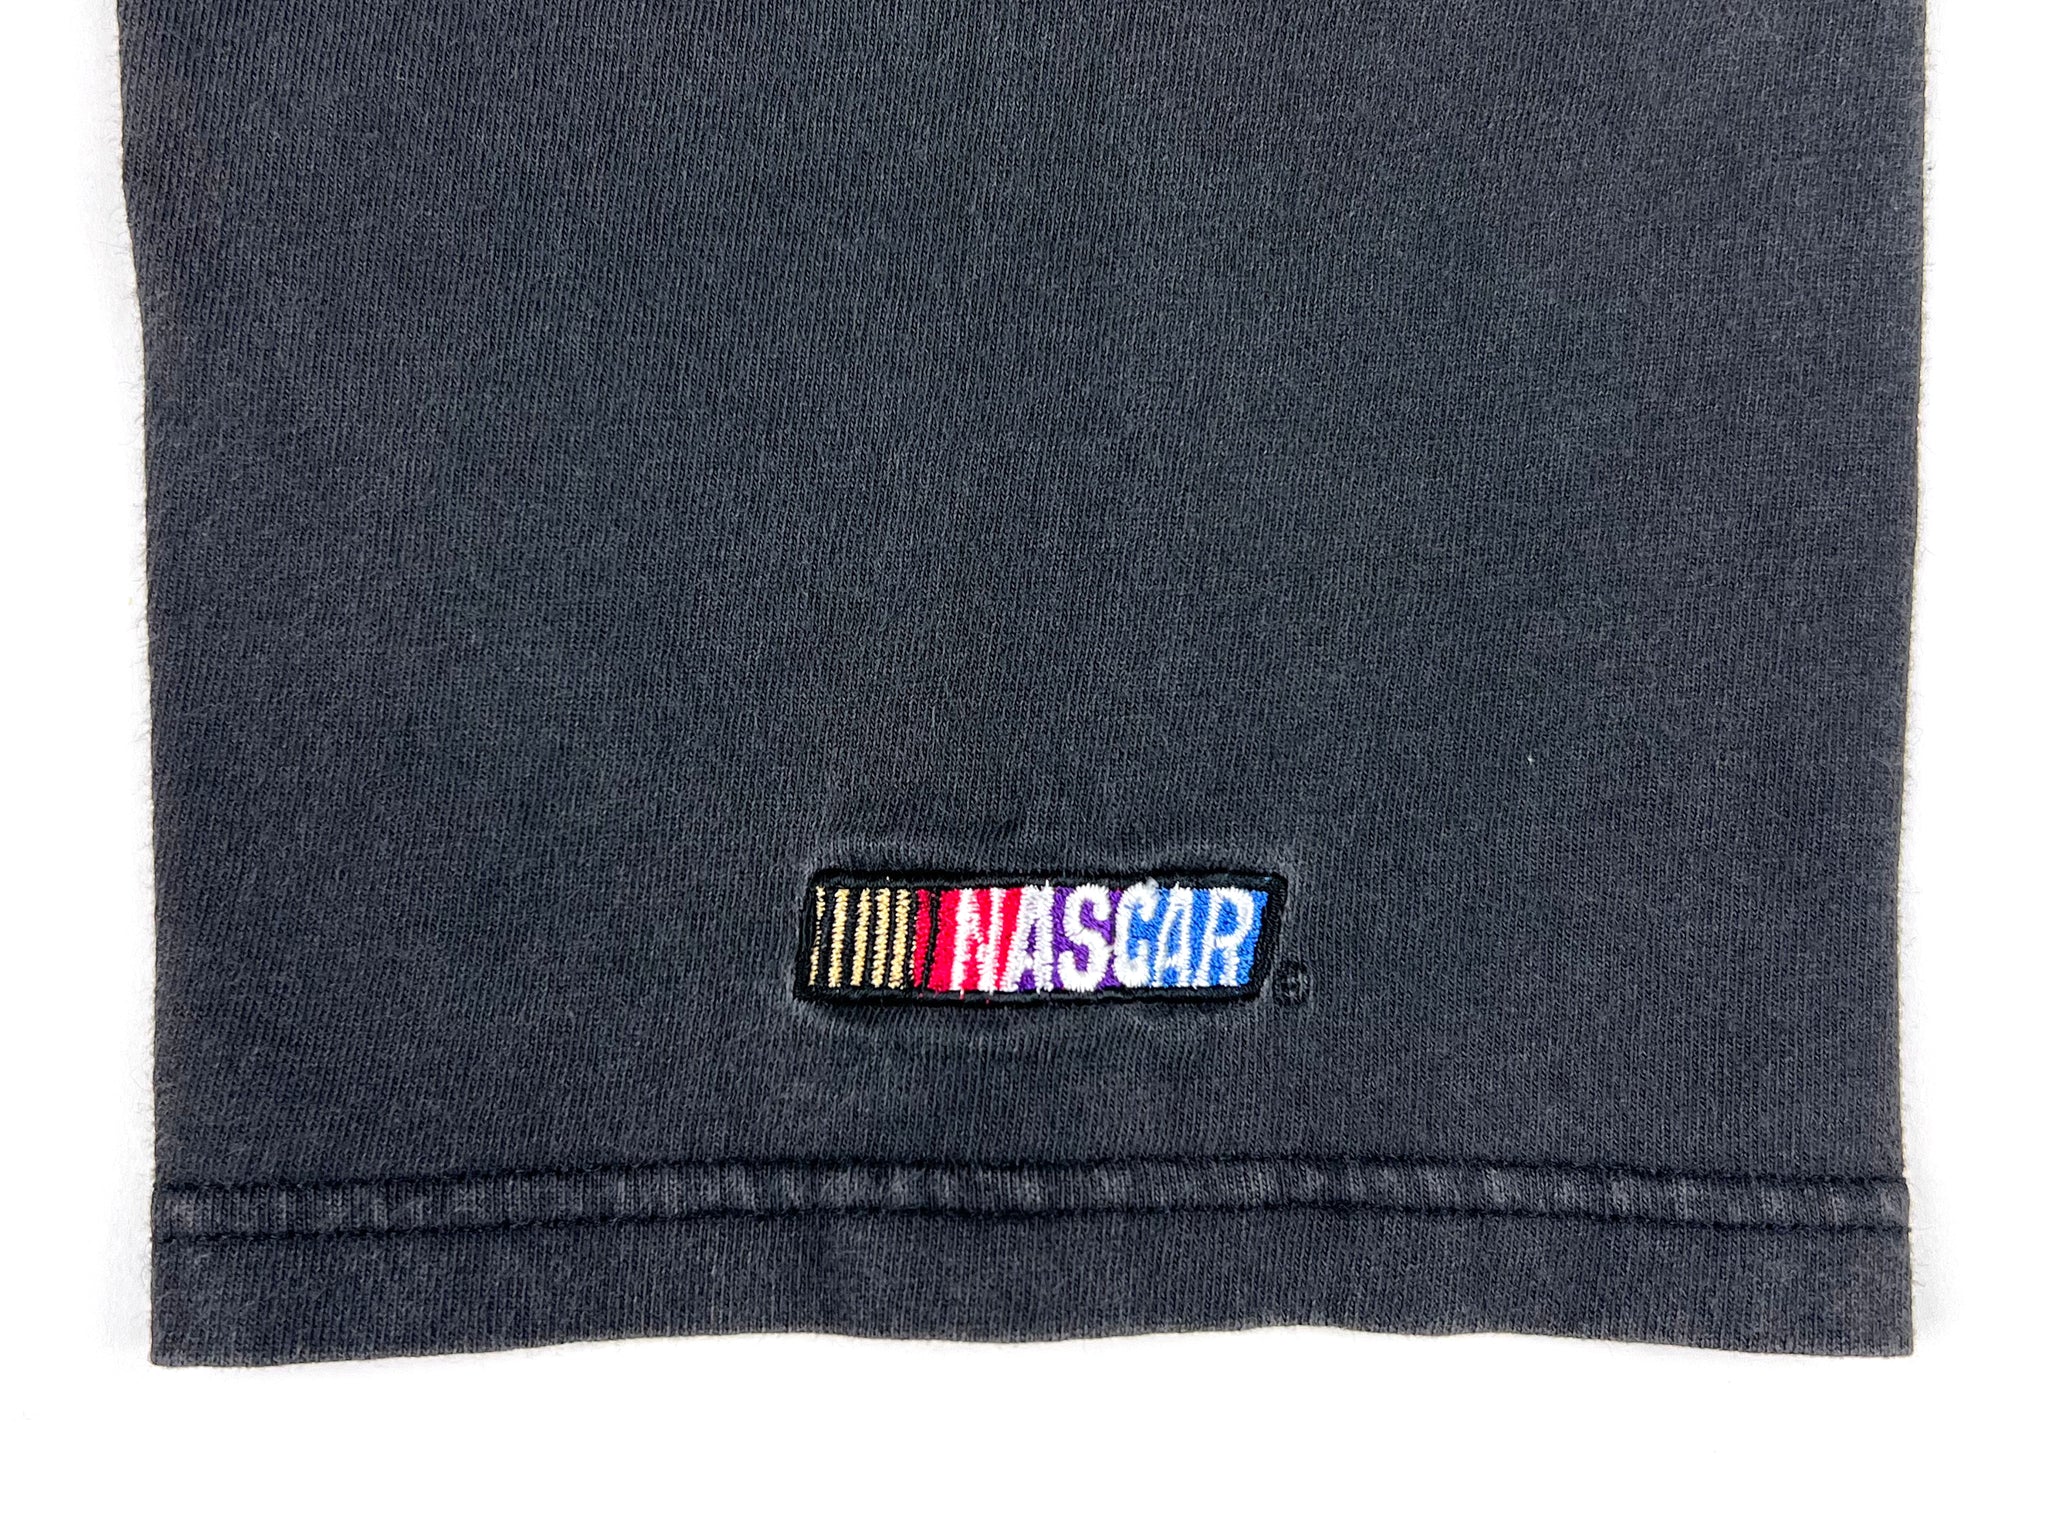 Nascar Cracker Barrel 500 Embroidered T-Shirt